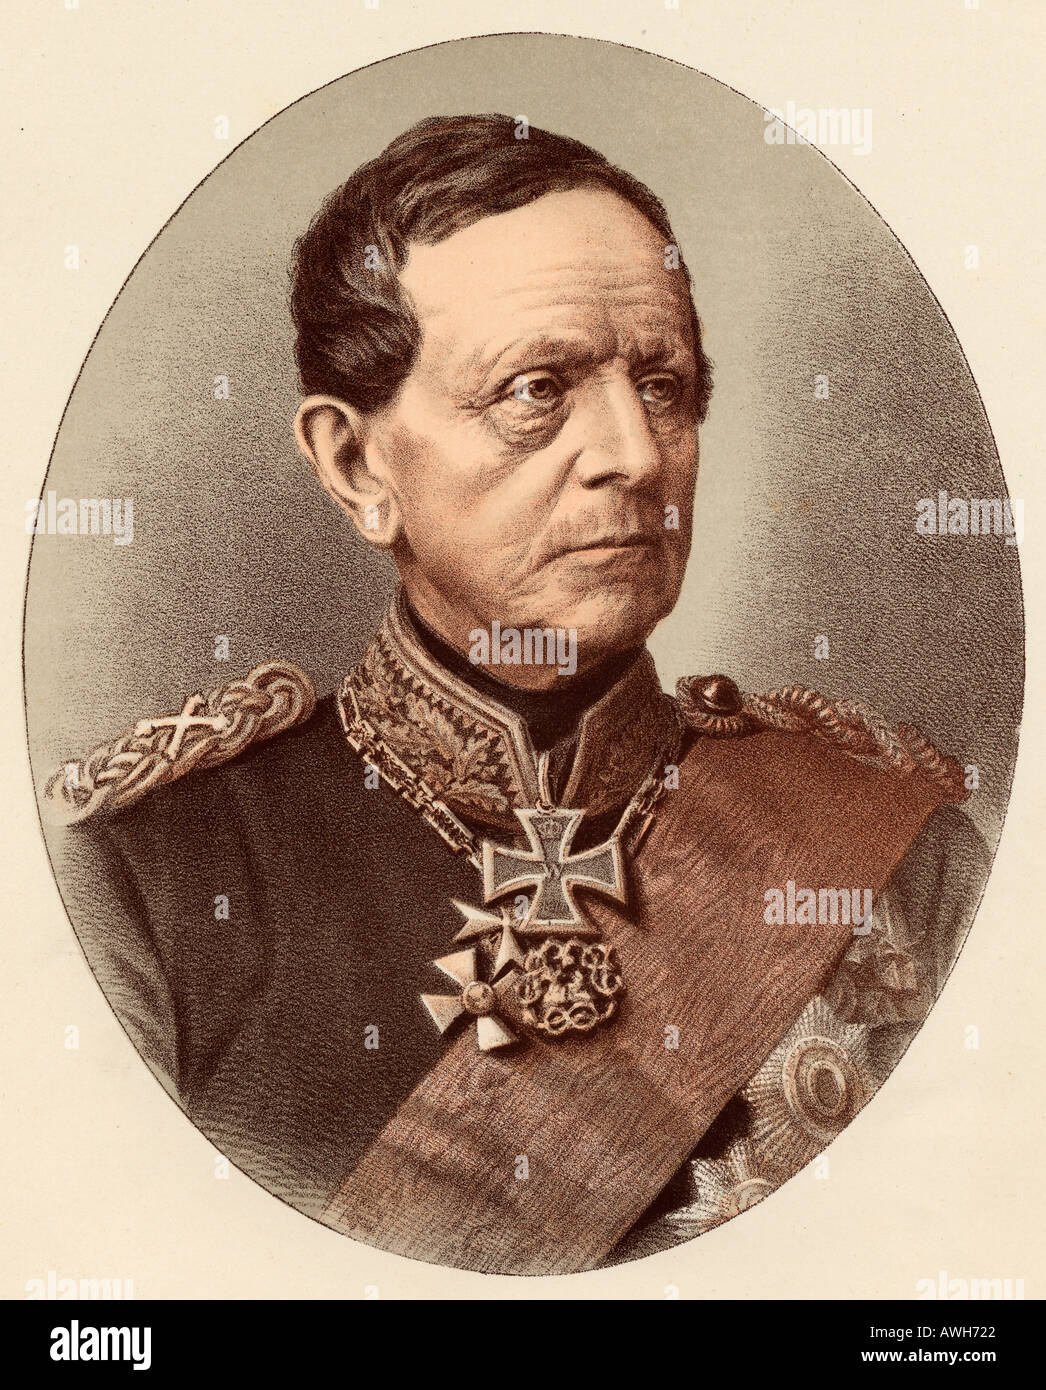 Helmuth Karl Bernhard Graf von Moltke, 1800 – 1891.  Prussian field marshal. Stock Photo